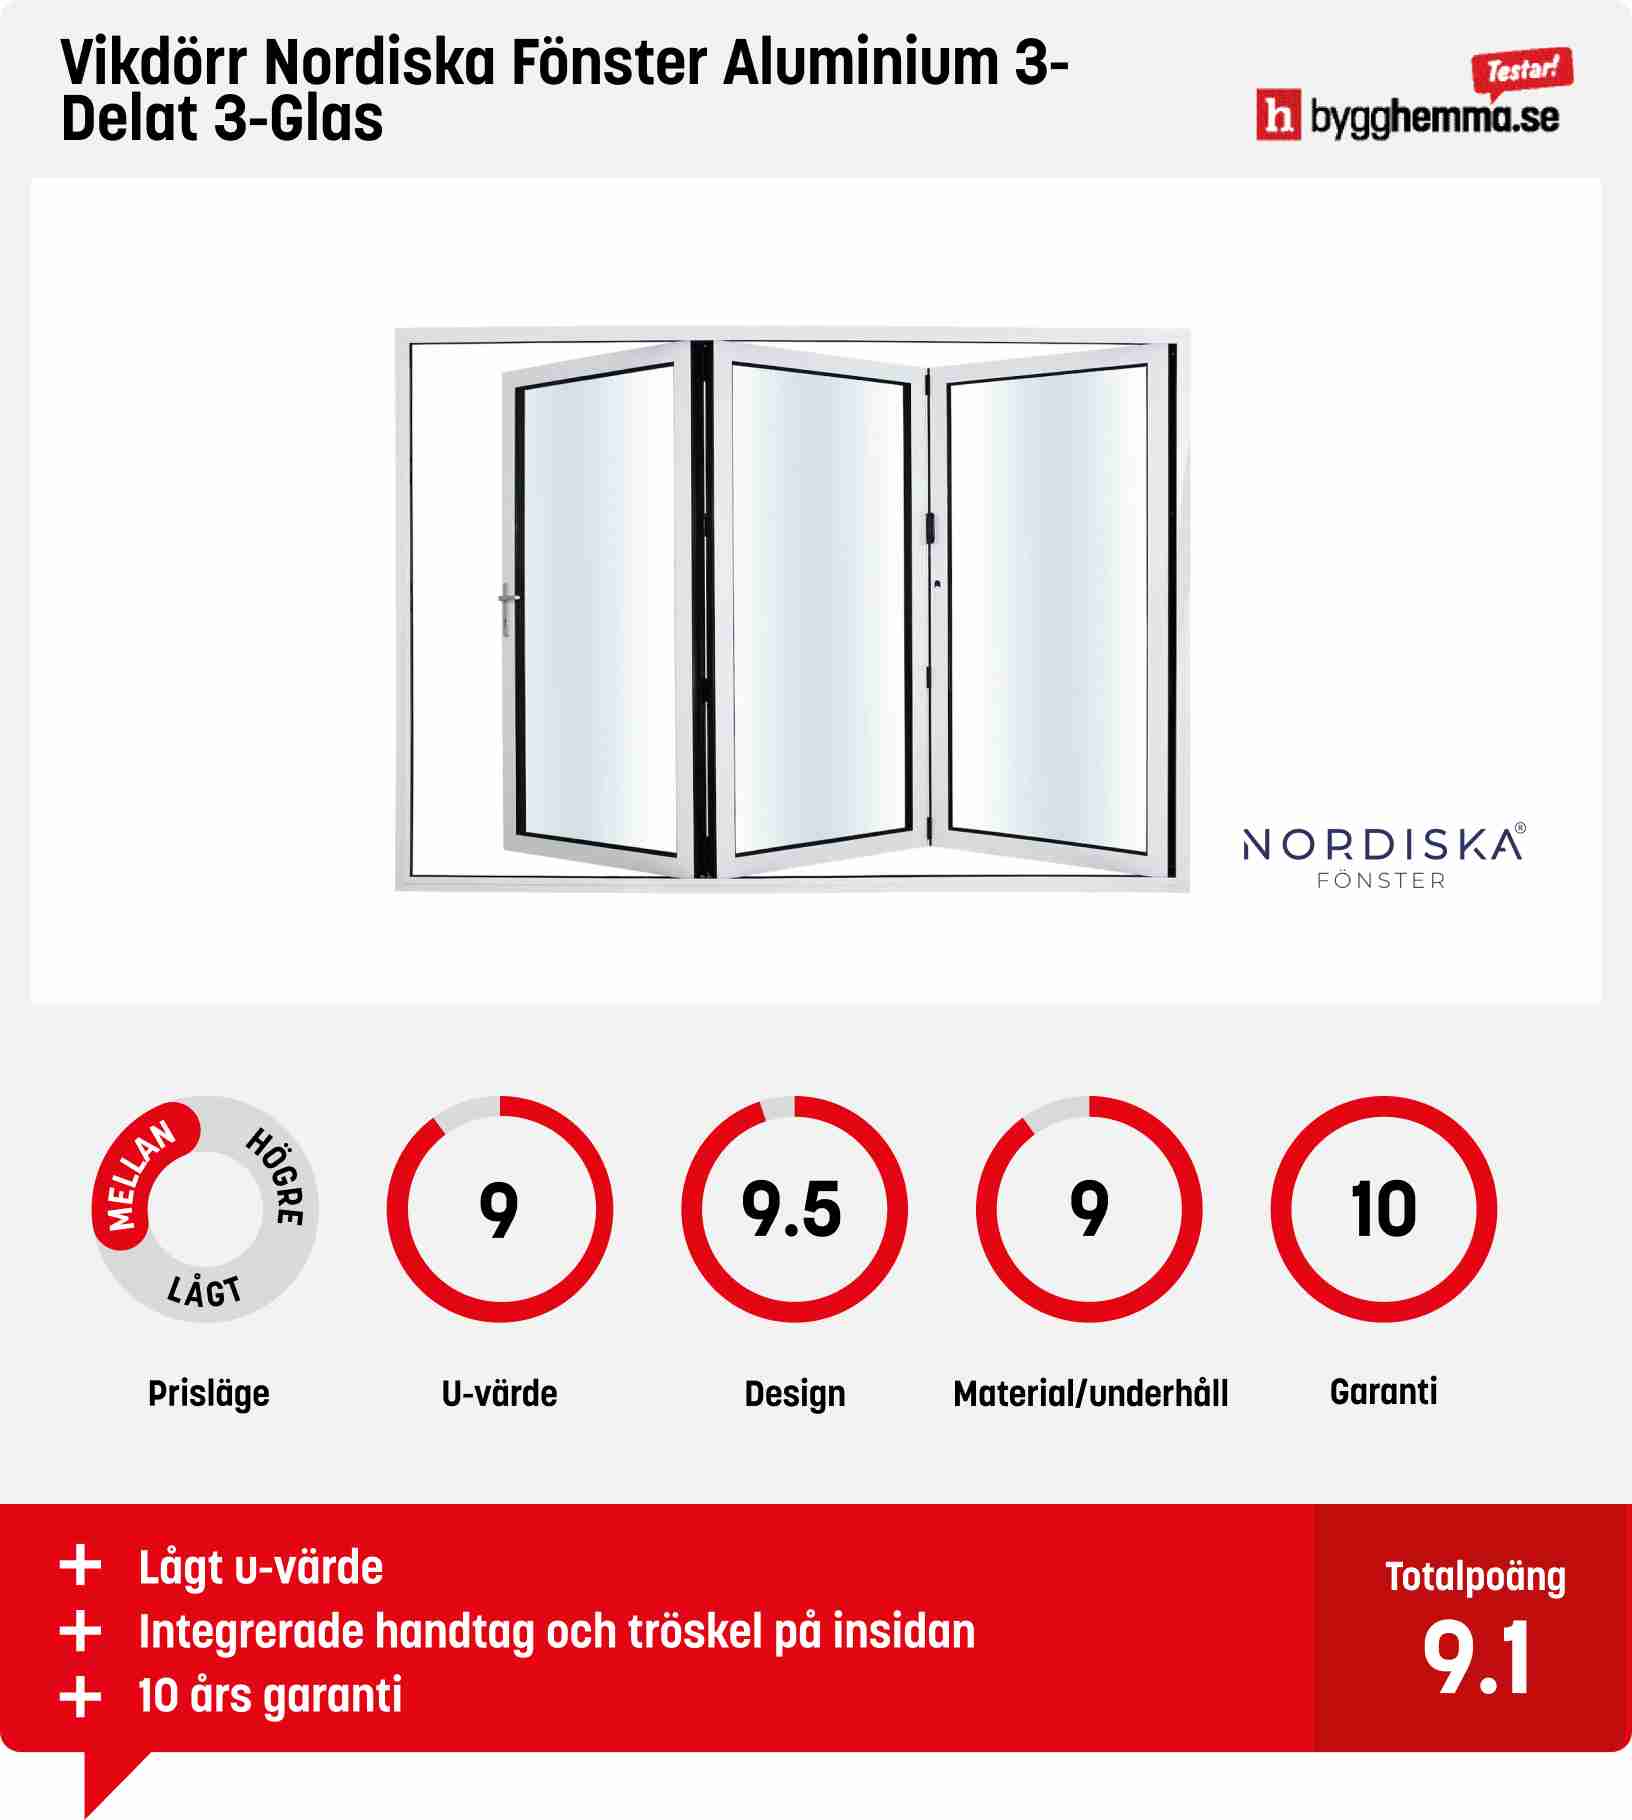 Vikdörr bäst i test - Vikdörr Nordiska Fönster Aluminium 3-Delat 3-Glas